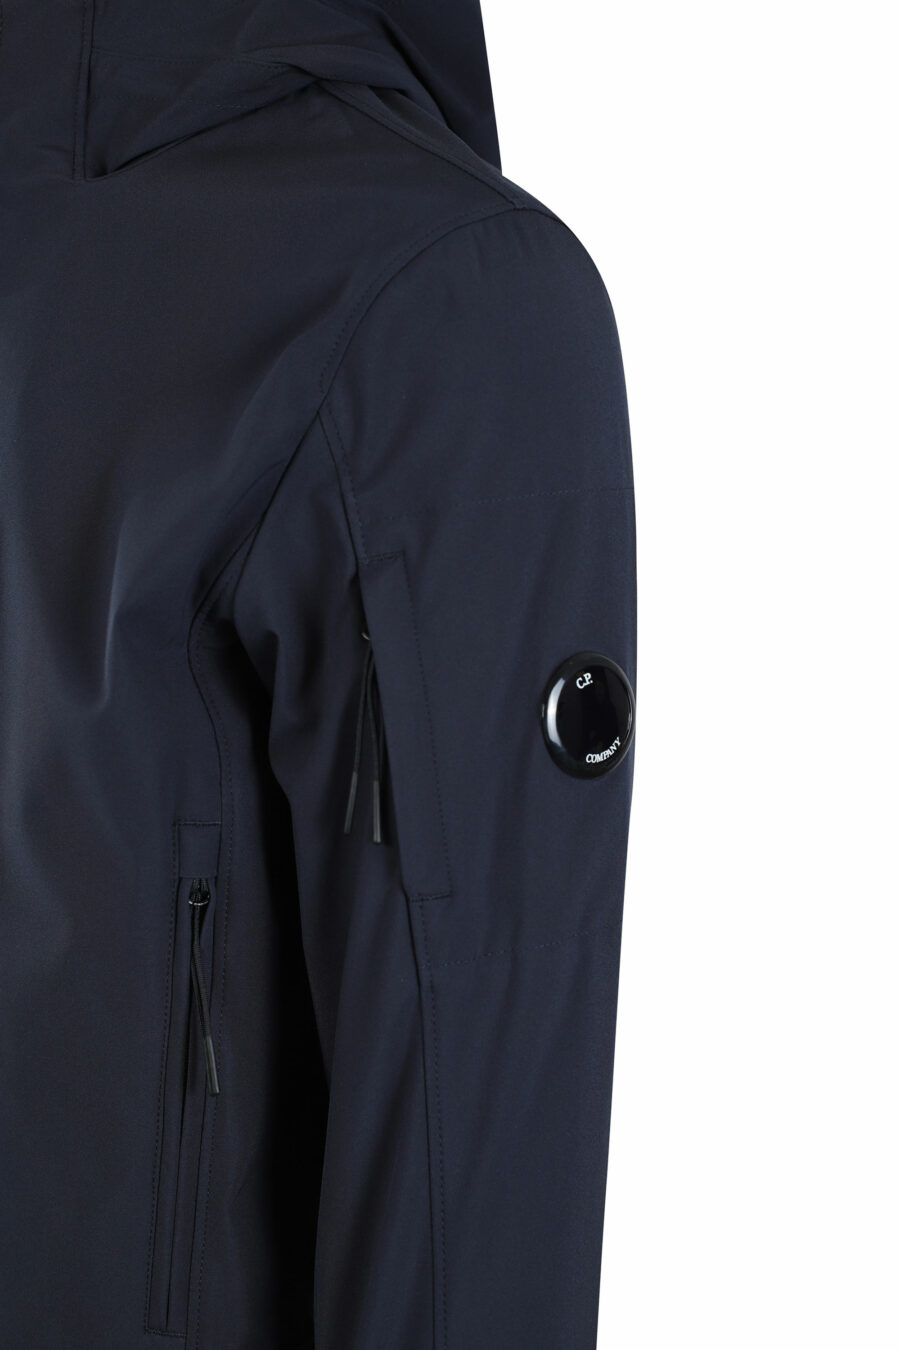 Chaqueta azul oscura con capucha y bolsillo lateral con minilogo circular - IMG 2682